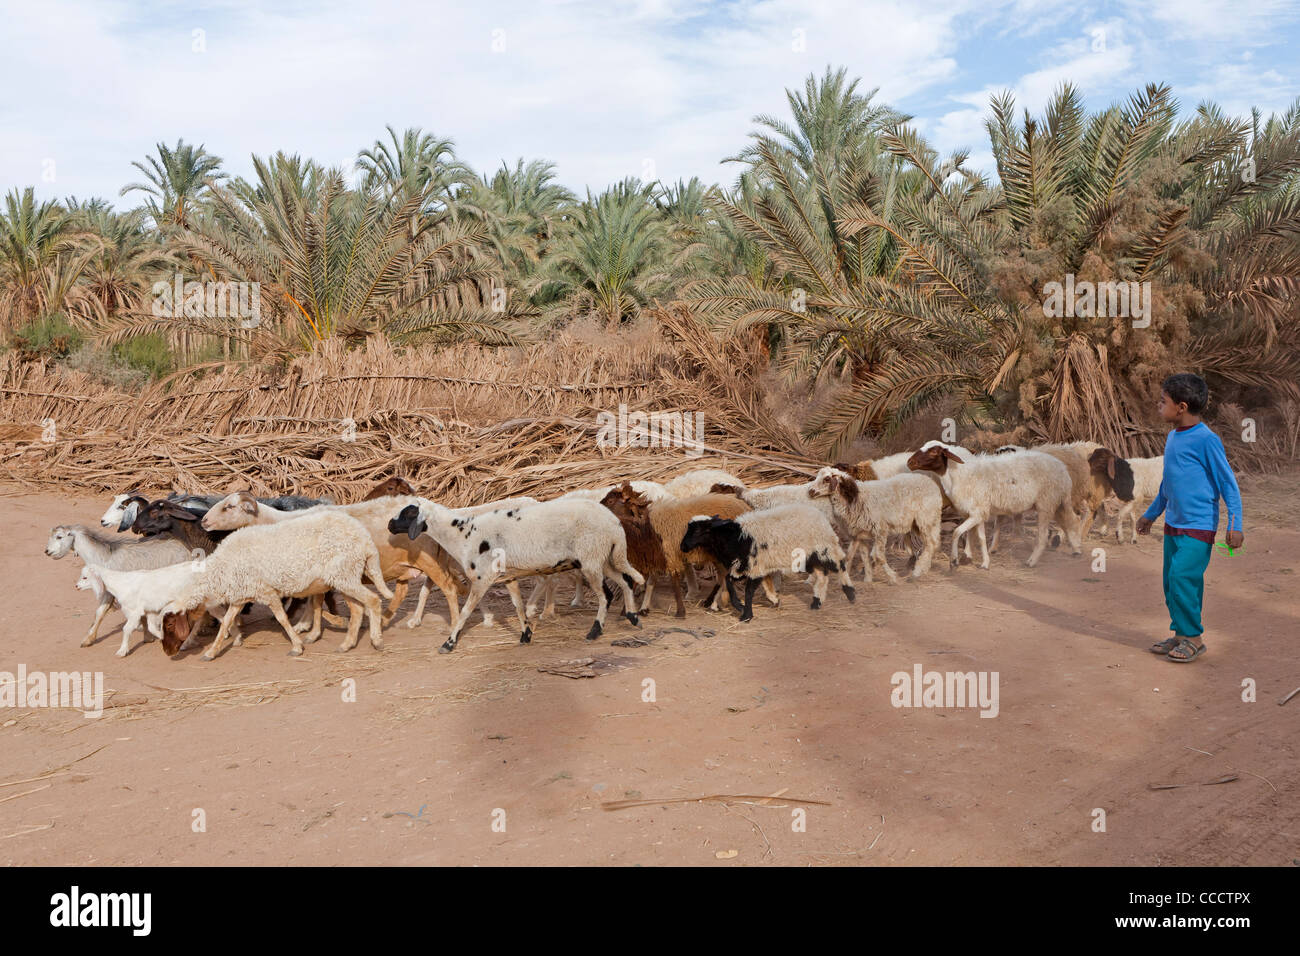 Jeune garçon marche avec troupeau de moutons et chèvres à Dakhla Oasis, Désert occidental de l'Égypte Banque D'Images